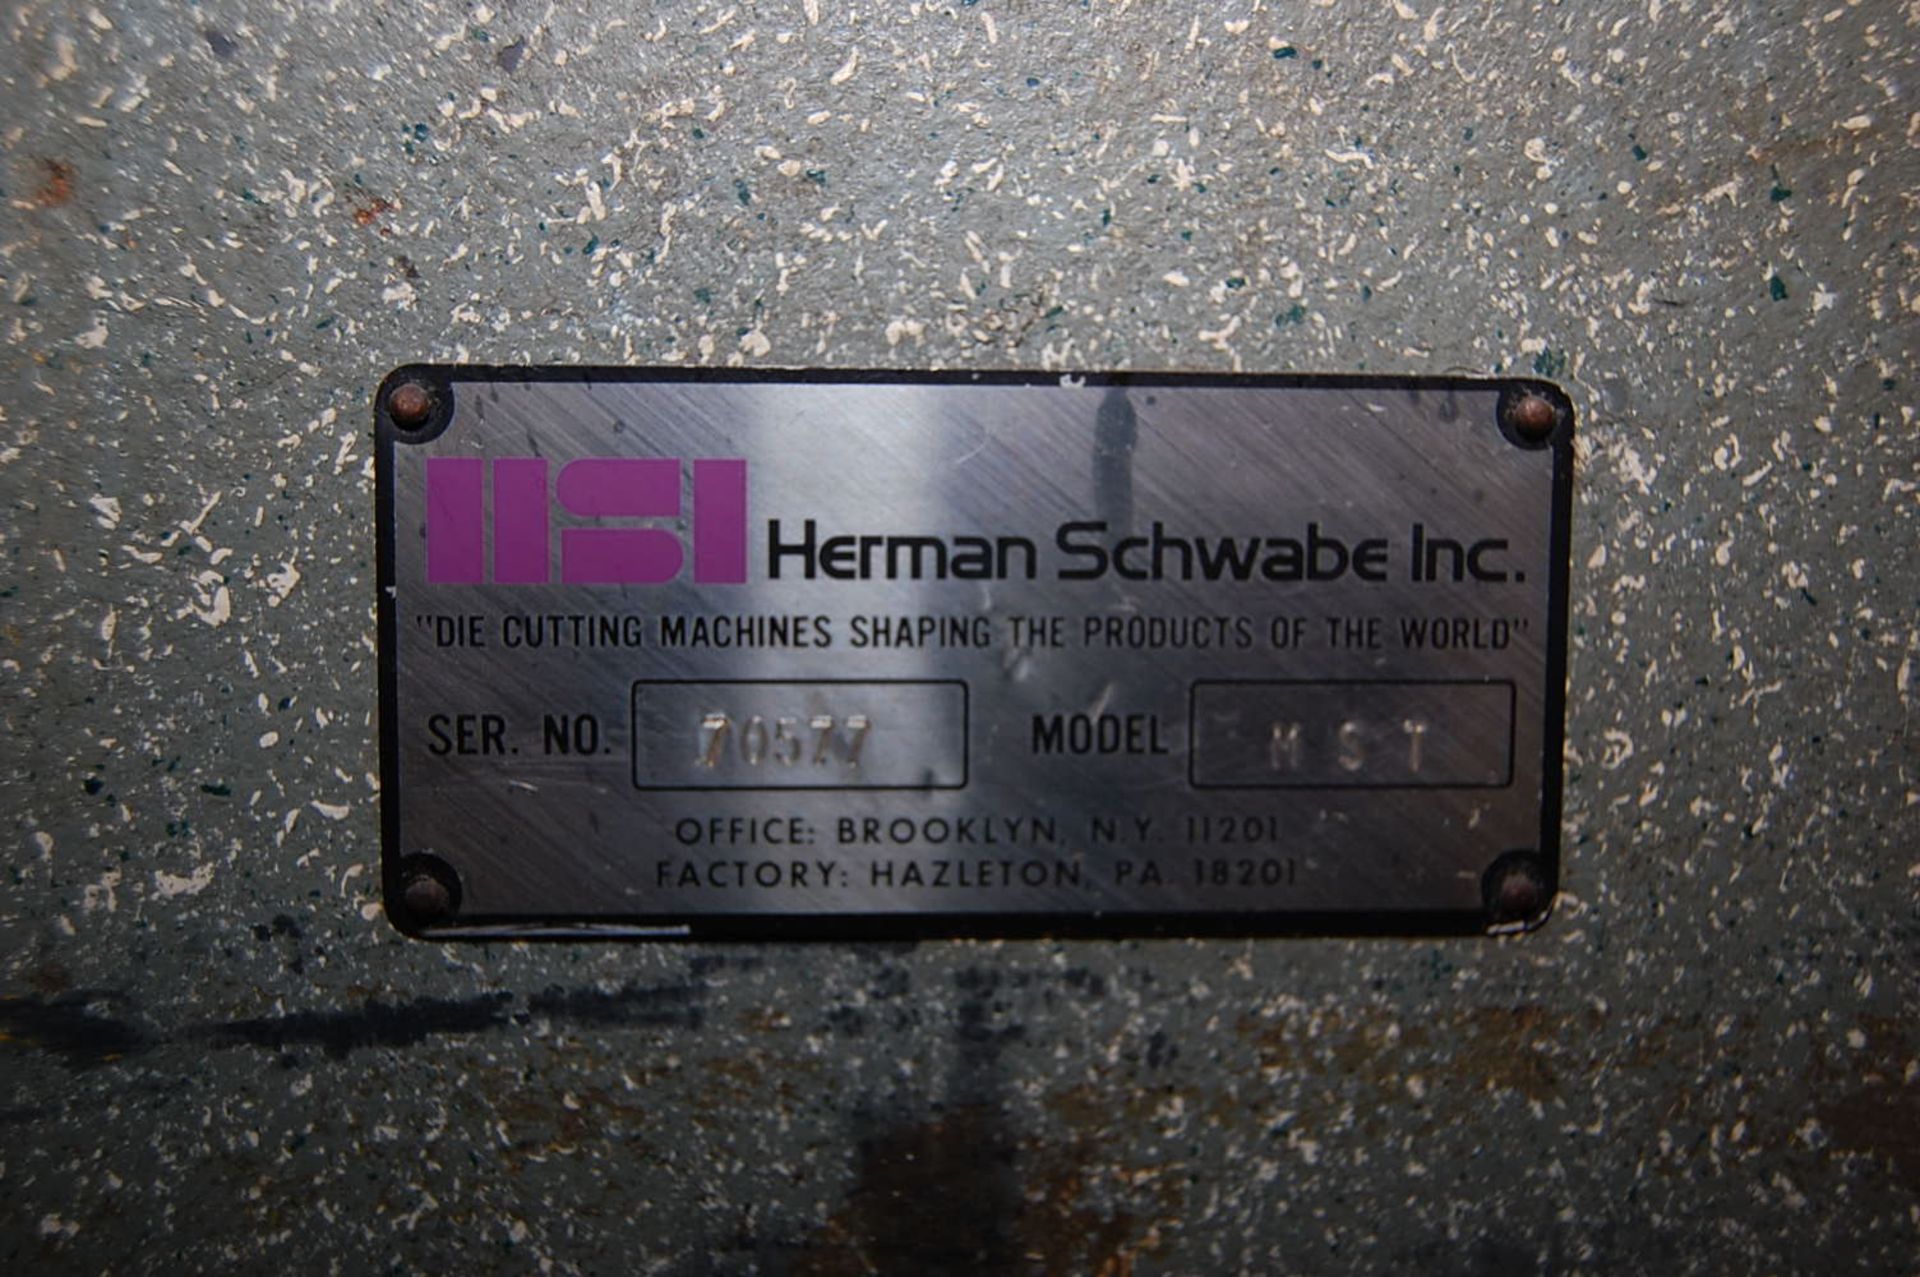 Herman Schwabe Model #MST Die Cutter Machine, 66 in. x 30 in. Table, 7 1/2 HP Motor, 230/460 Volt, - Image 4 of 4